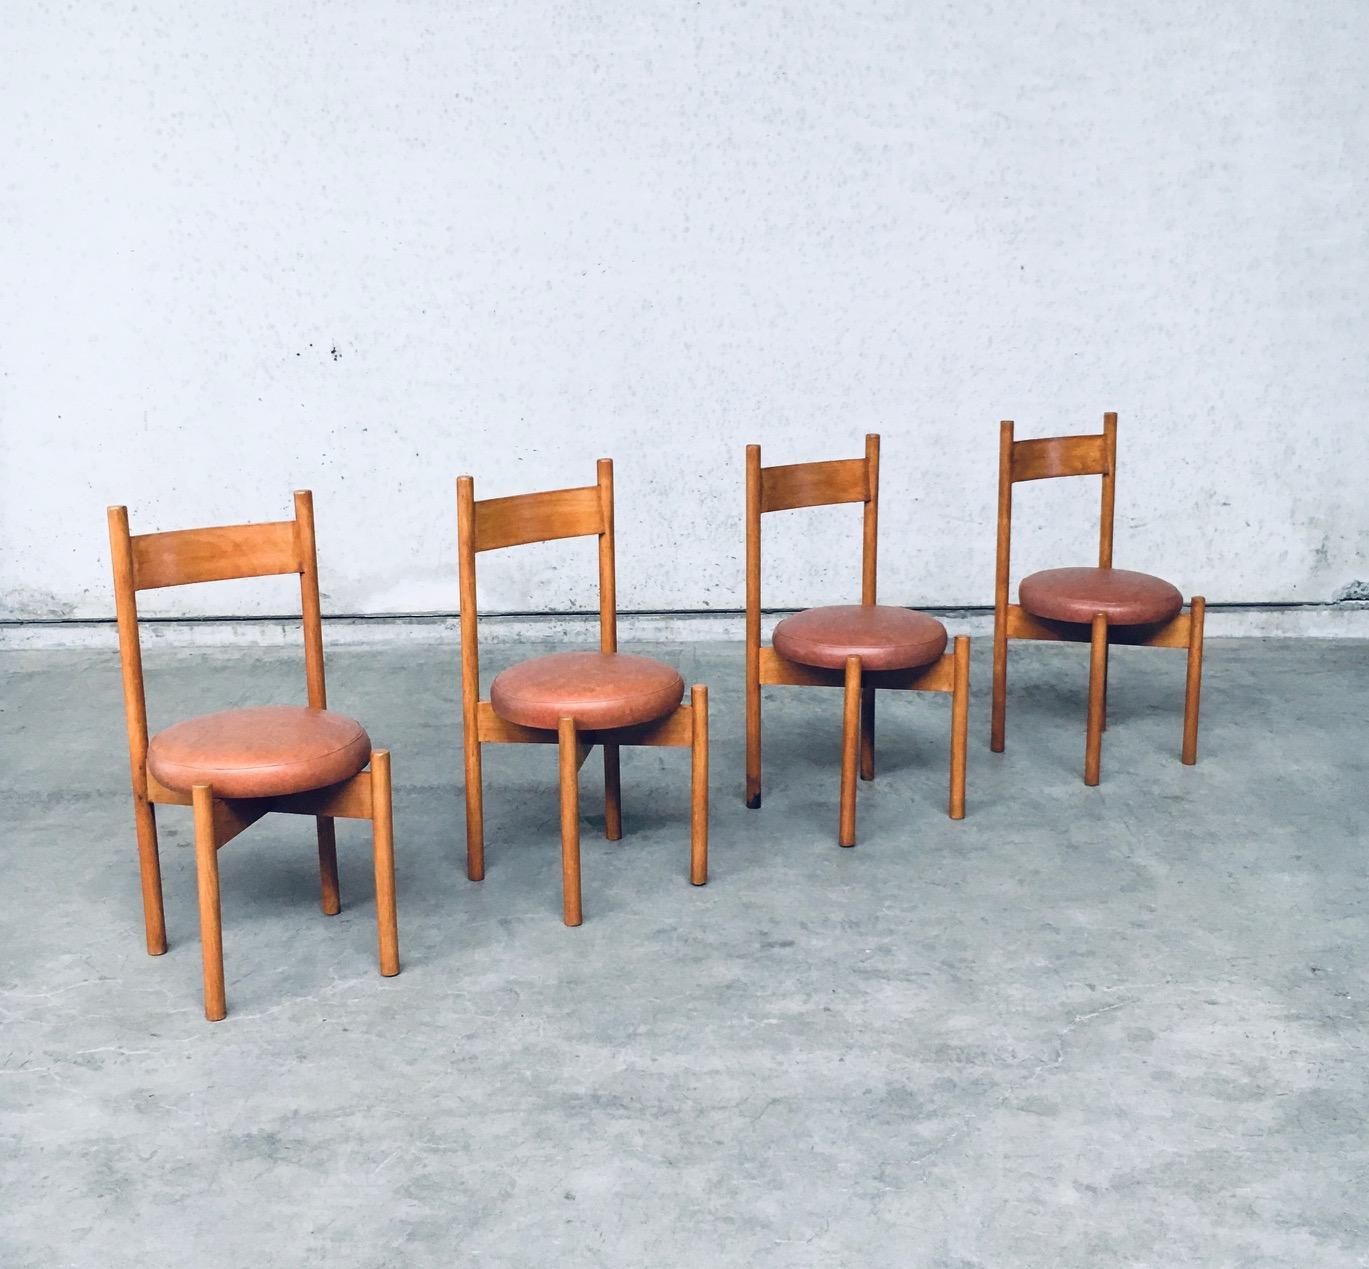 By Vintage Midcentury Modern Design Dining Chair set of 4 in the Style of Charlotte Perriand 'Meribel' Model chairs. Fabriqué en France, période des années 1960. Chaises construites en Beeche avec un coussin en simili cuir pour l'assise. Les chaises